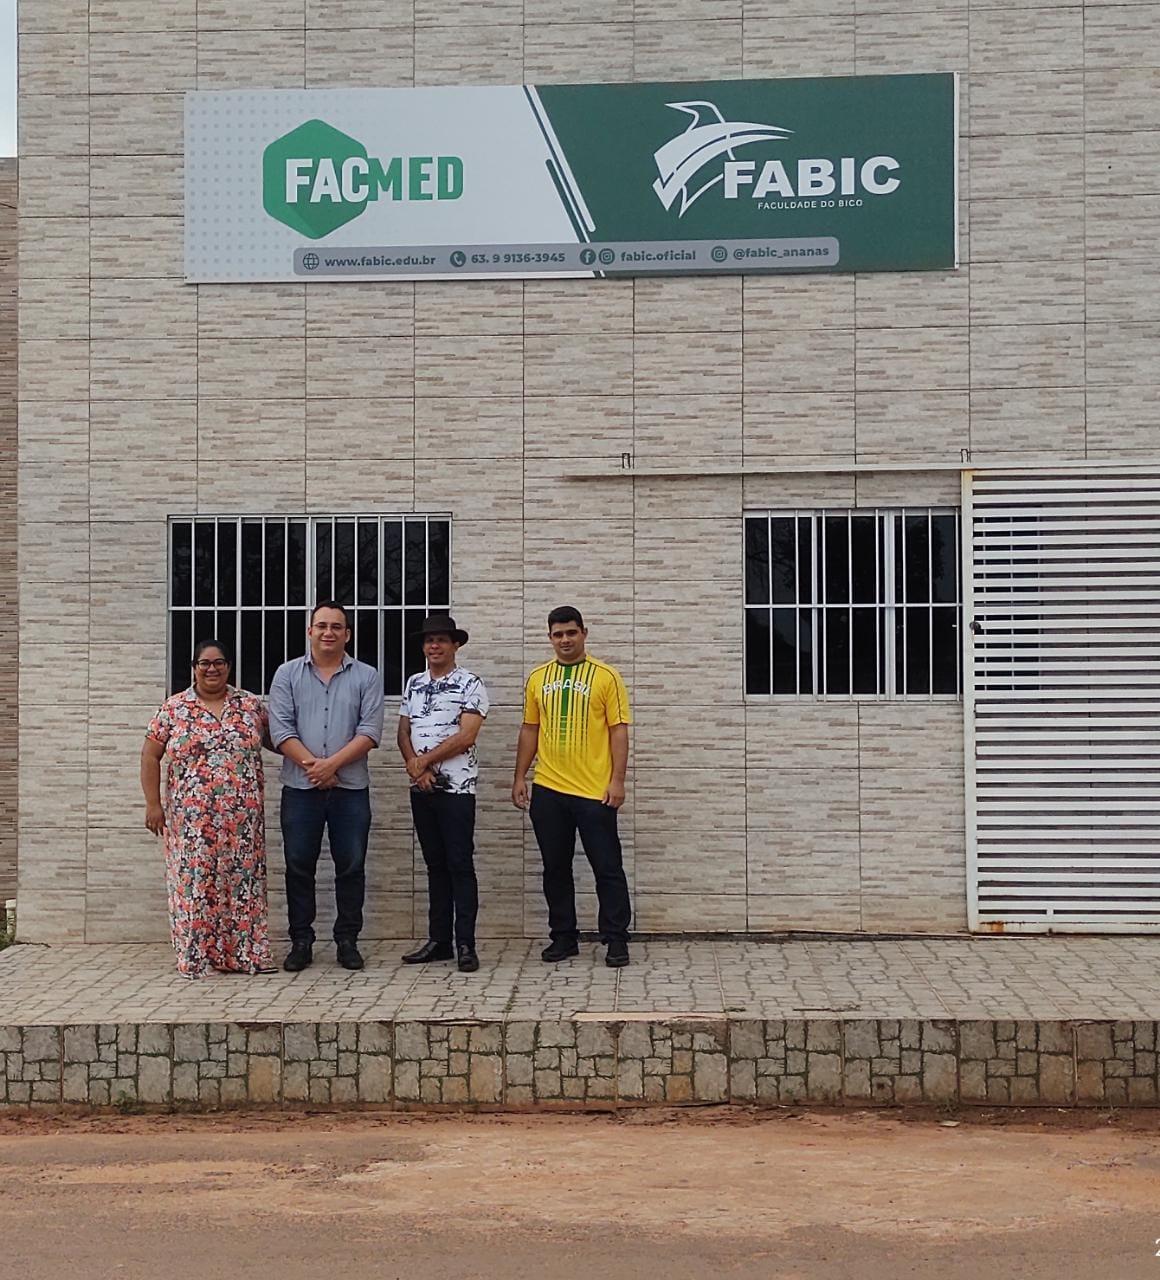 EM BREVE: Fabic anuncia construção de prédio em Ananás